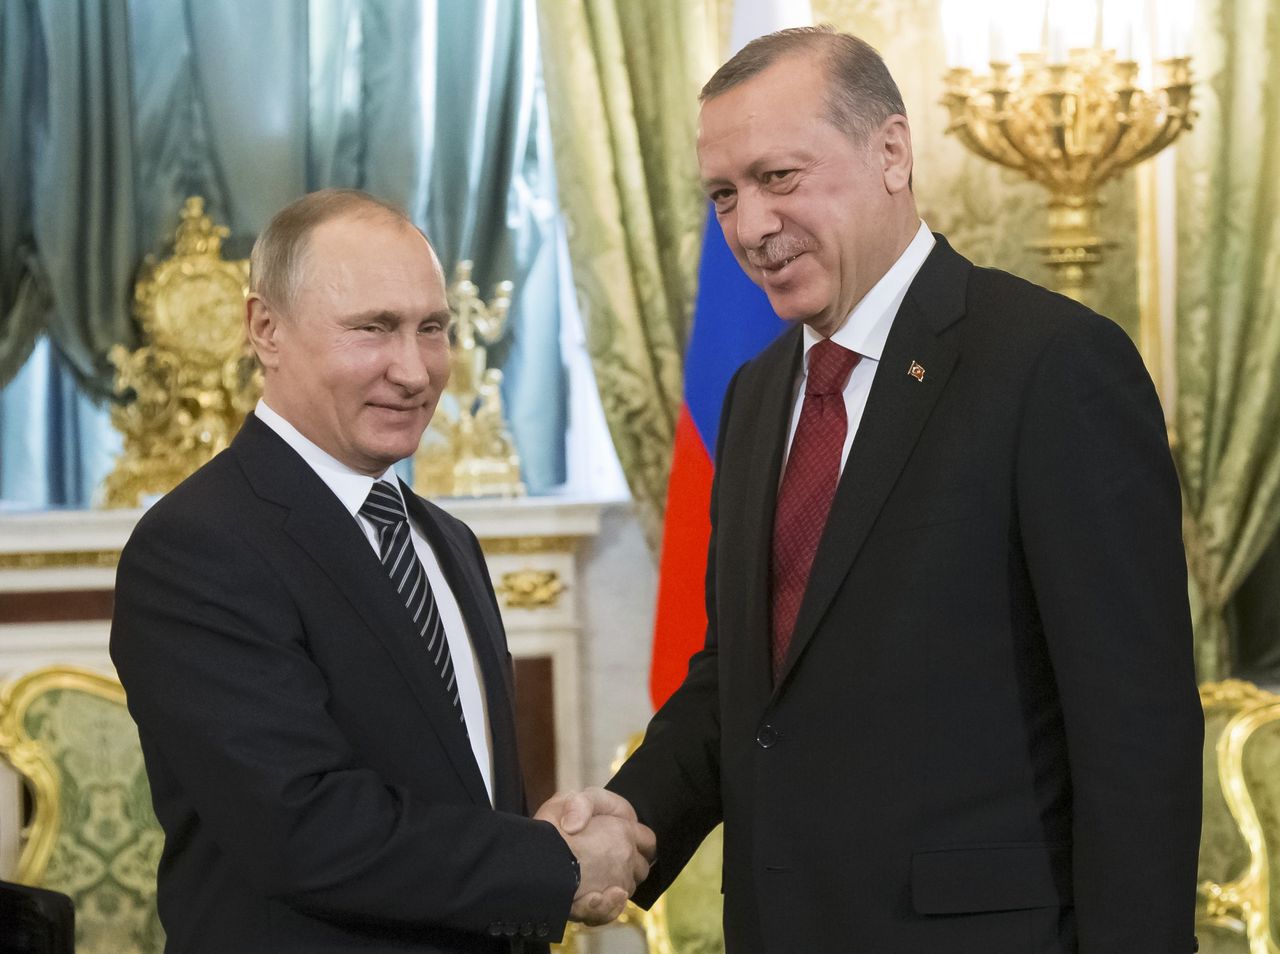 Vladimir Poetin en Tayyip Erdogan schudden handen tijdens een ontmoeting in Moskou op 10 maart 2017.